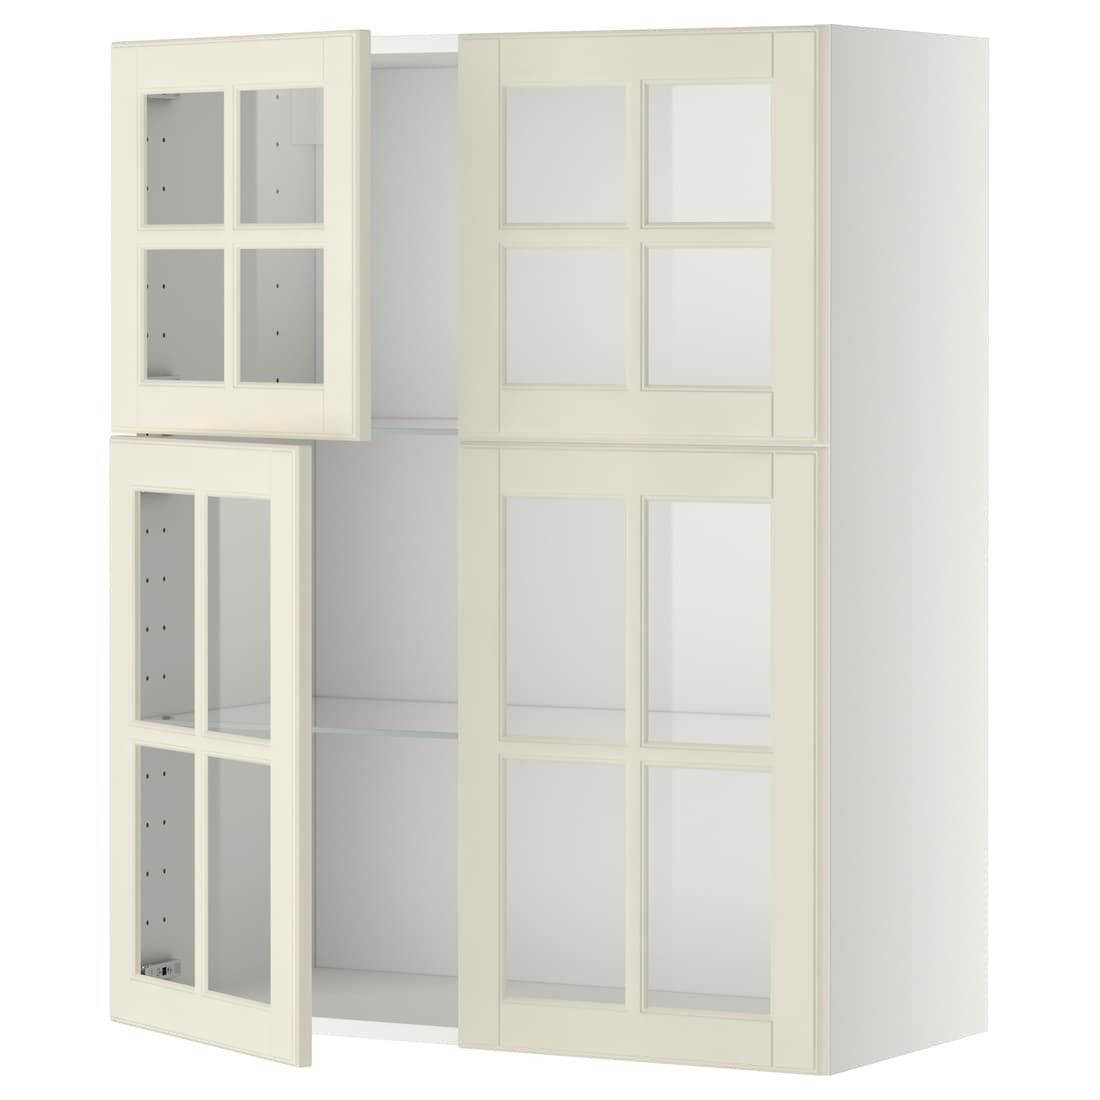 IKEA METOD МЕТОД Навісна шафа / полиці / 4 скляних дверей, білий / Bodbyn кремовий, 80x100 см 79394985 793.949.85